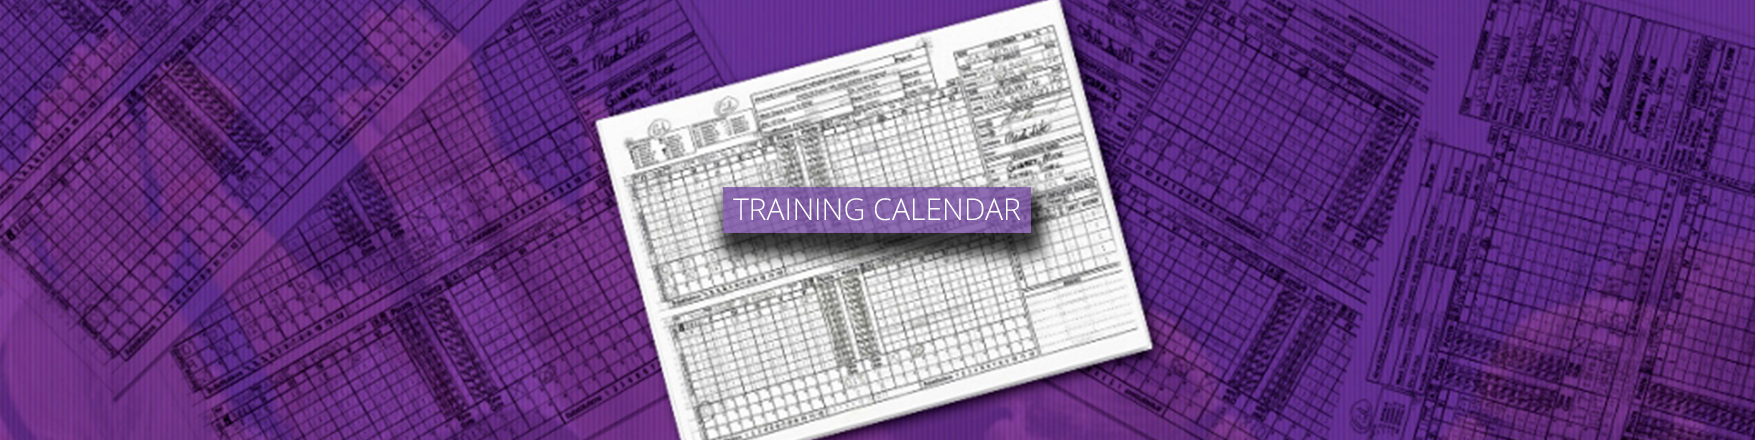 Training Calendar Cover